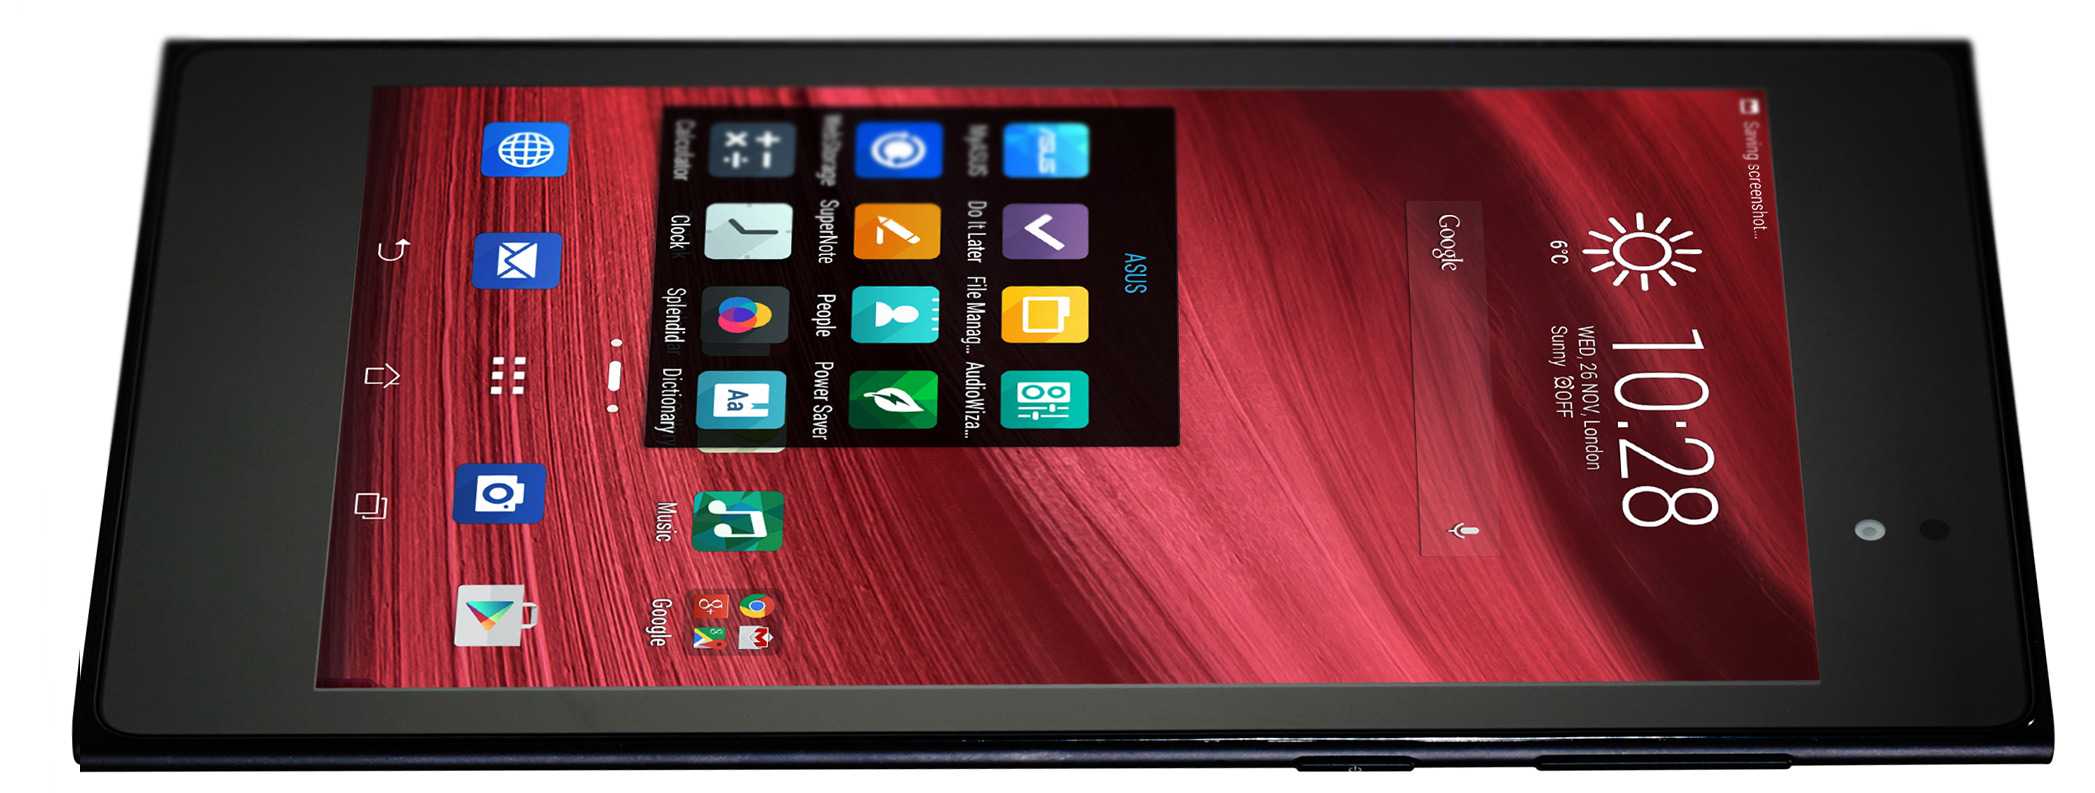 Обзор планшета asus memo pad 7: характеристики, фото и отзывы :: syl.ru